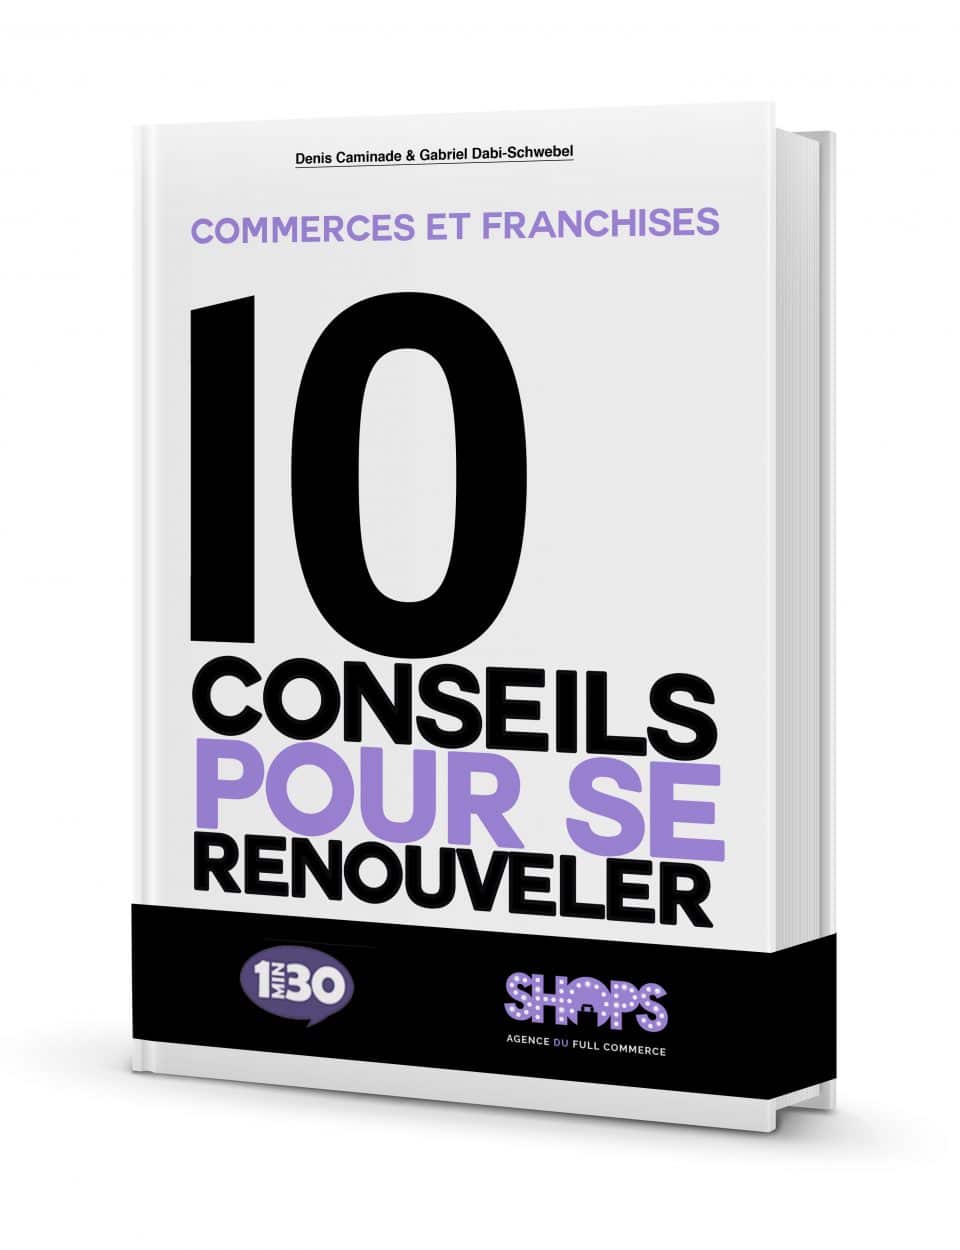 FRANCHISES ET COMMERCES : 10 CONSEILS POUR SE RENOUVELER »